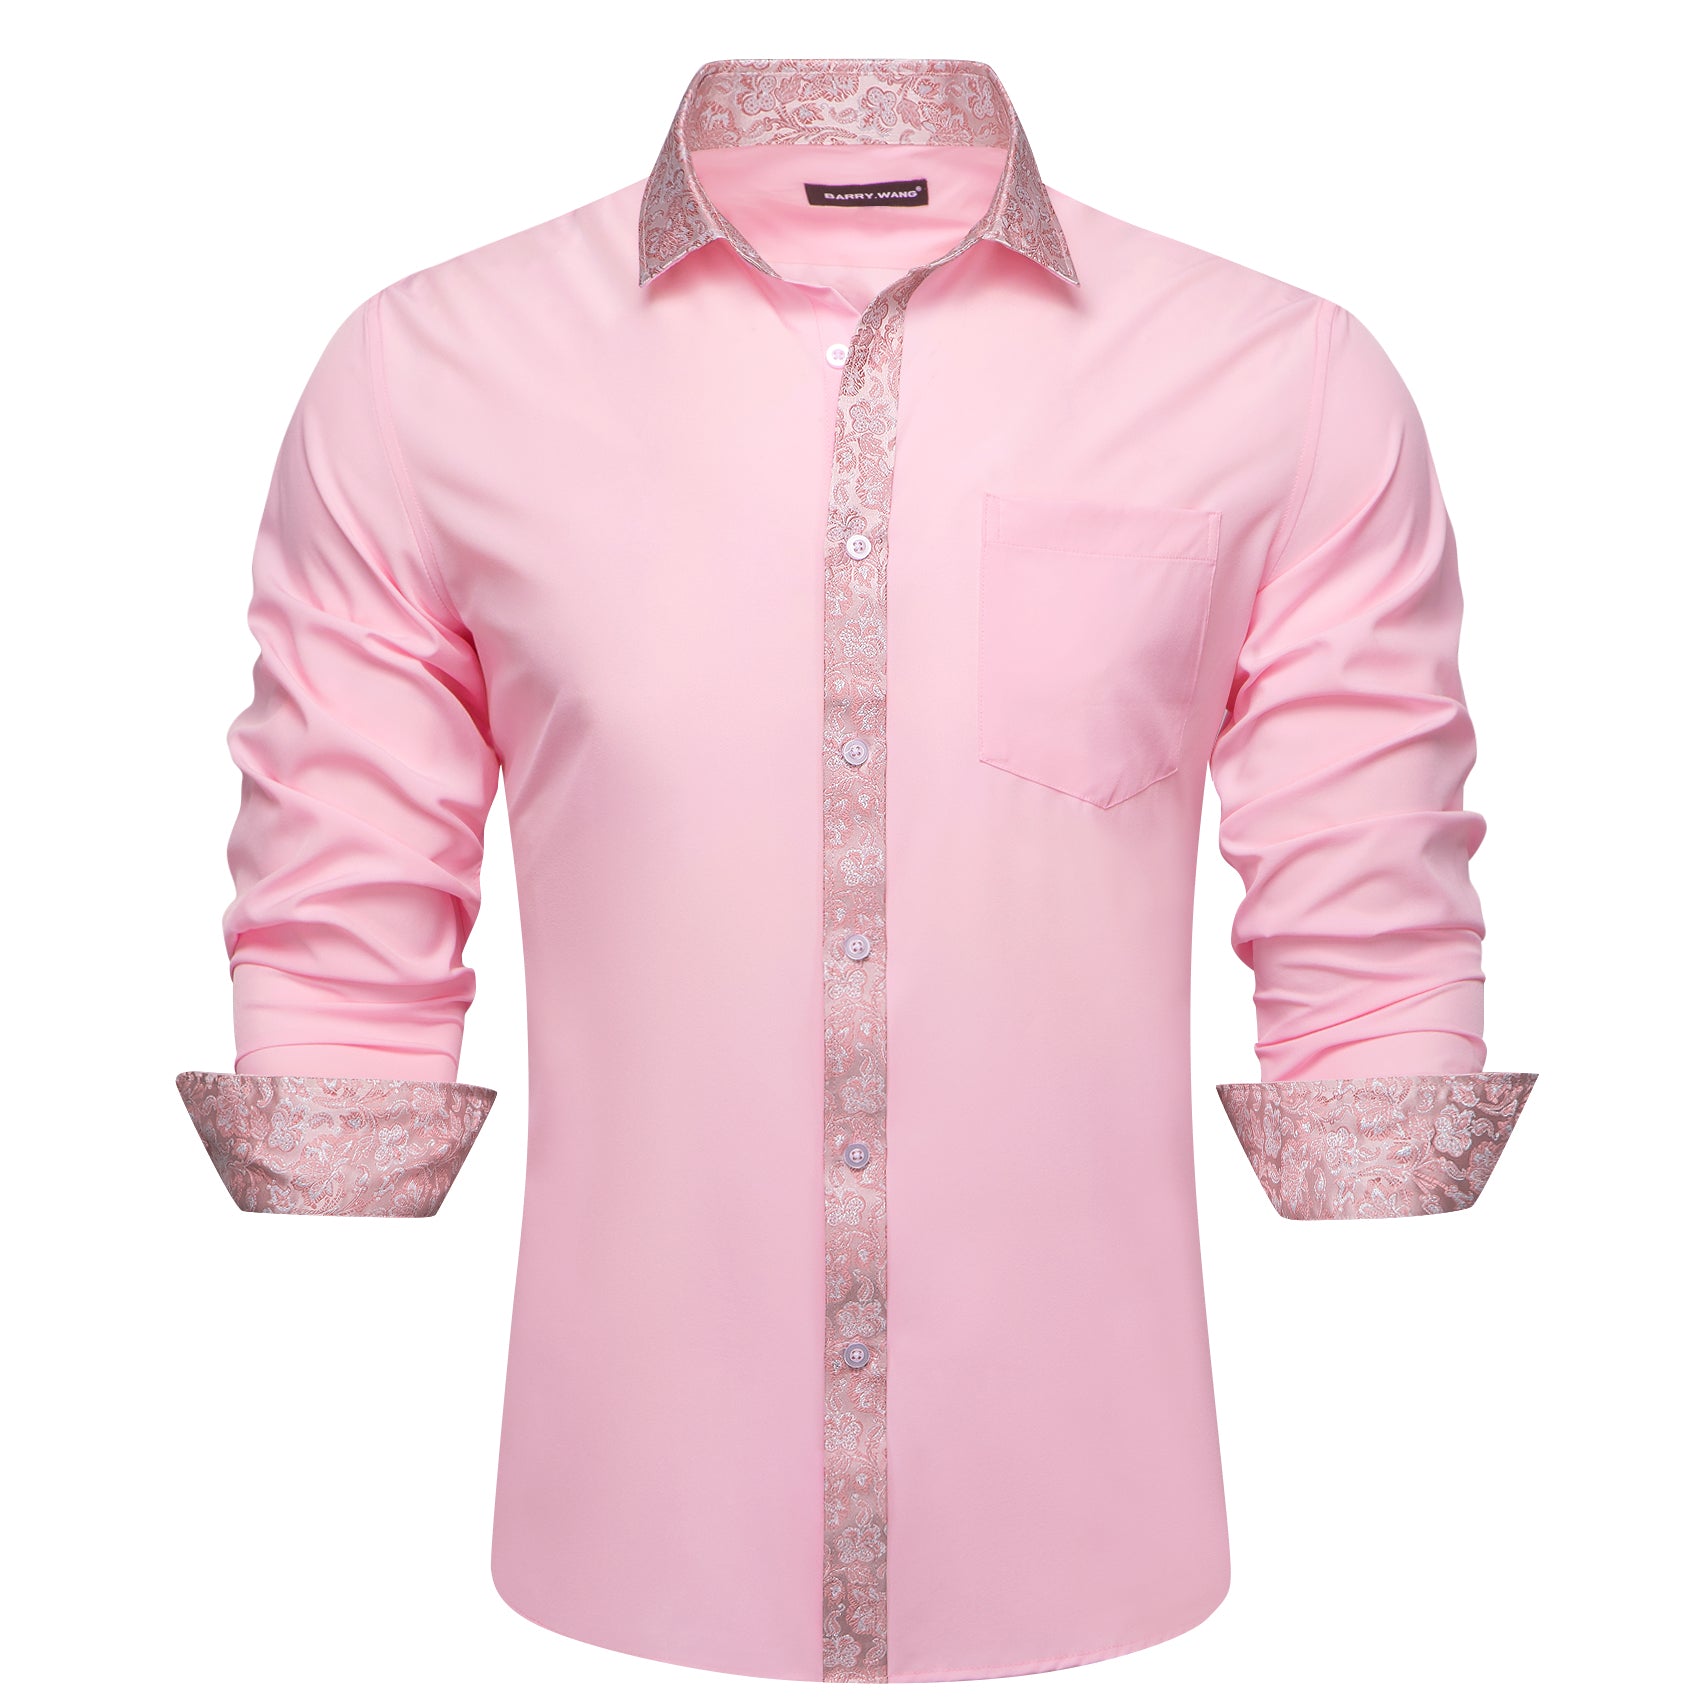 Barry.wang Pink Splicing Men's Business Shirt